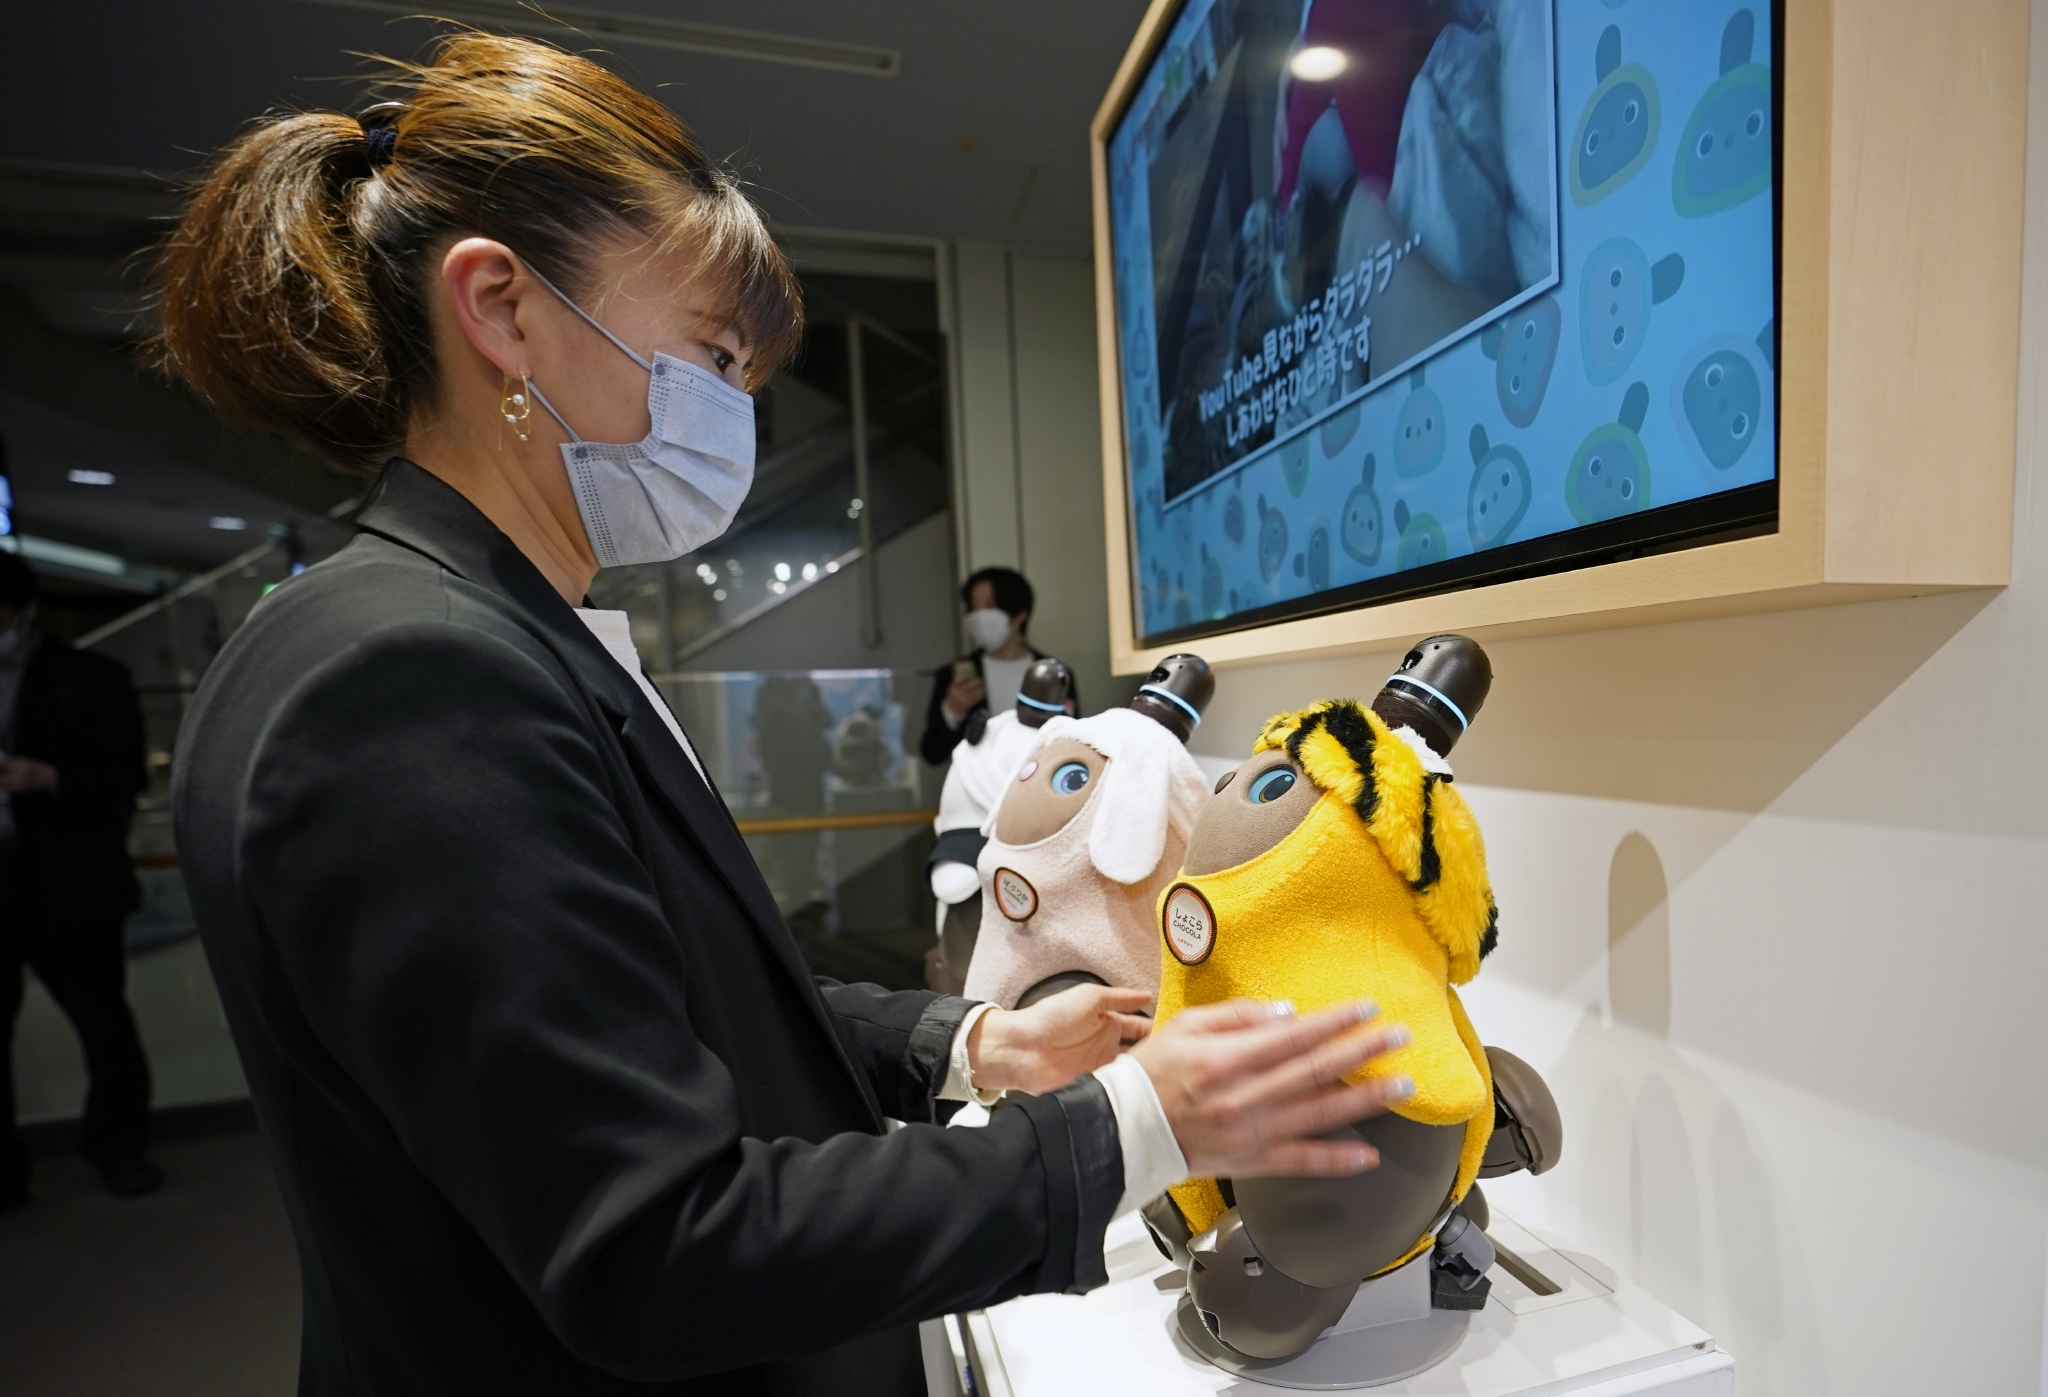 日本lovot机器人图片